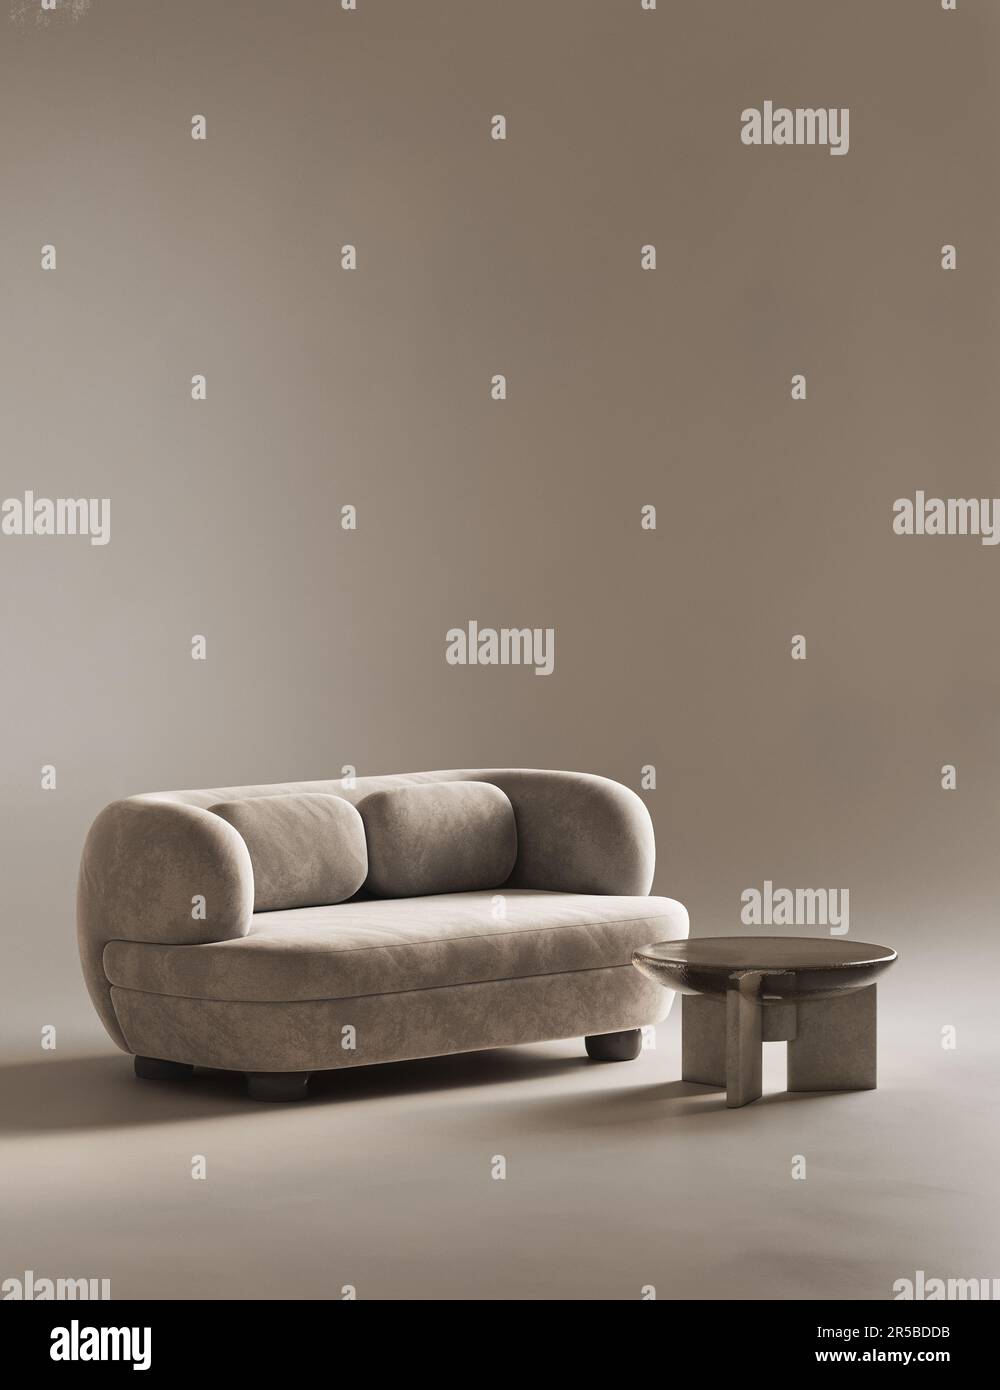 Salle intérieure conceptuelle avec mur en stuc. Canapé de composition créative avec table dans des tons pastel bruns chaleureux. Maquette arrière-plan vide. 3d rendu Banque D'Images